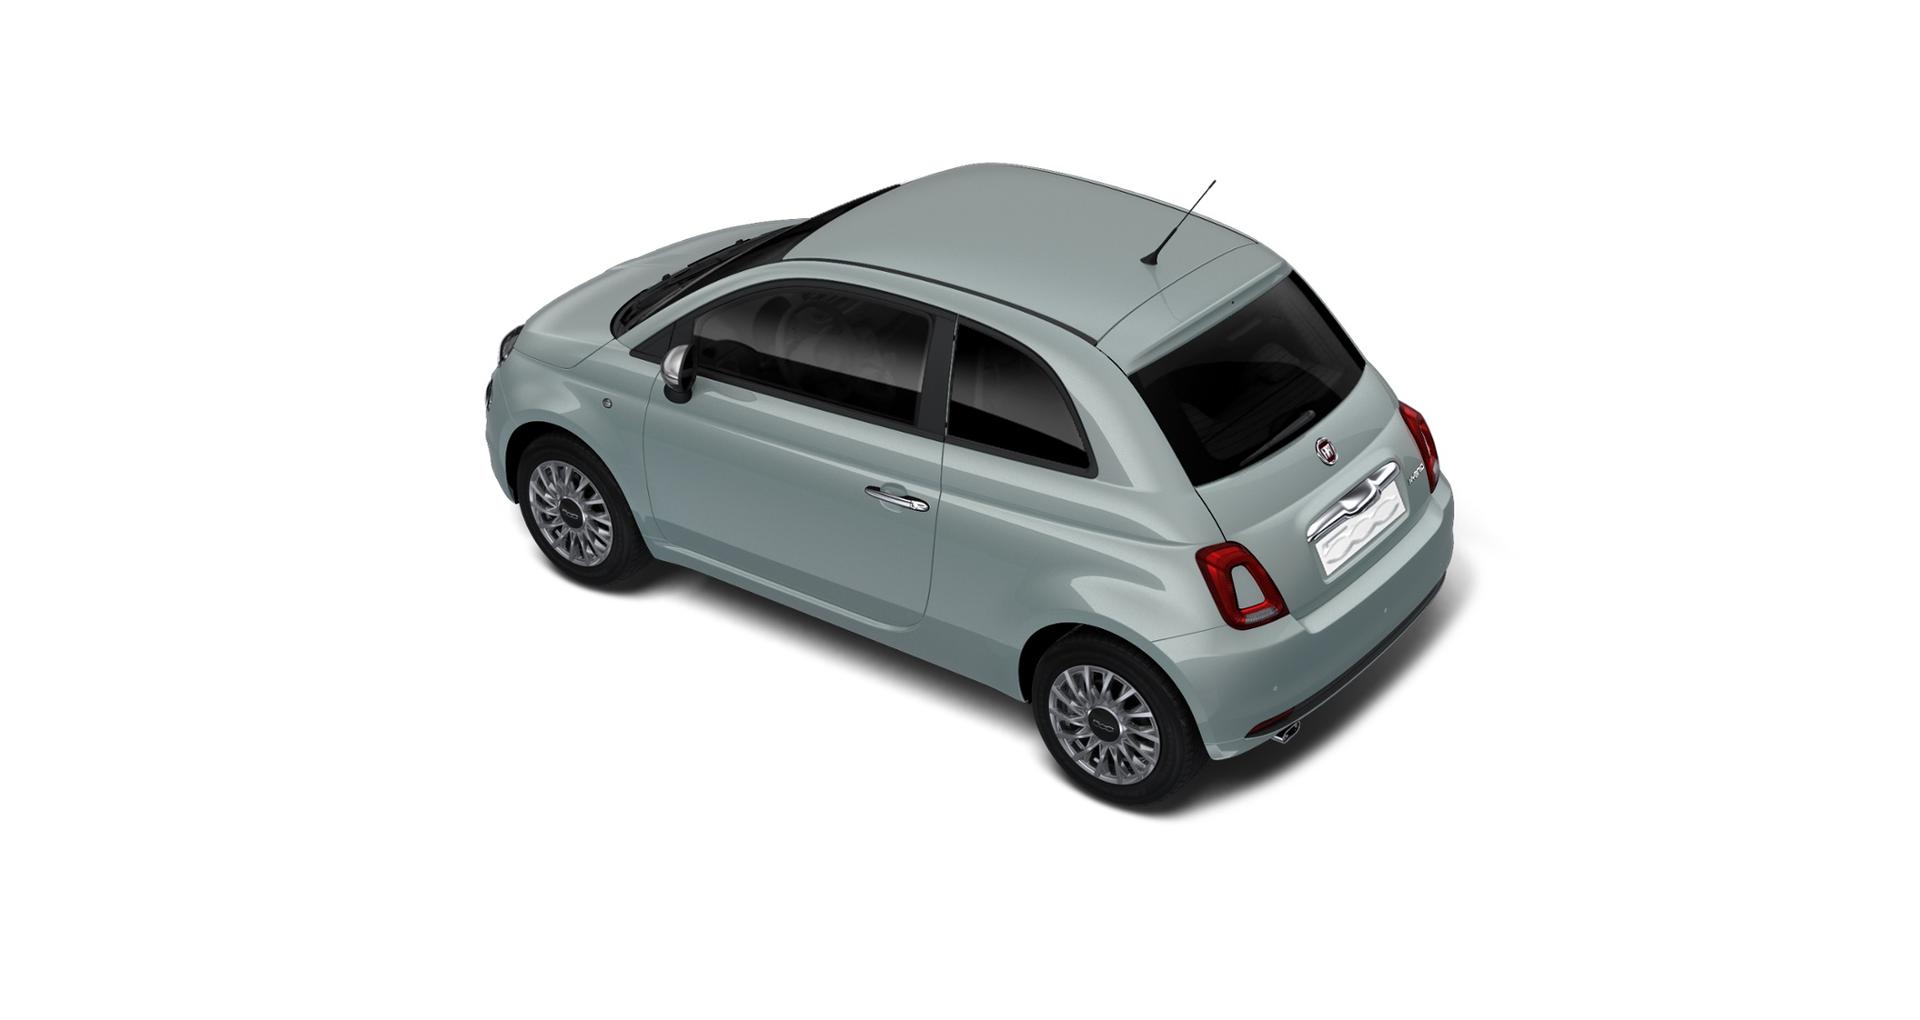 Autotüren für Fiat 500 günstig bestellen